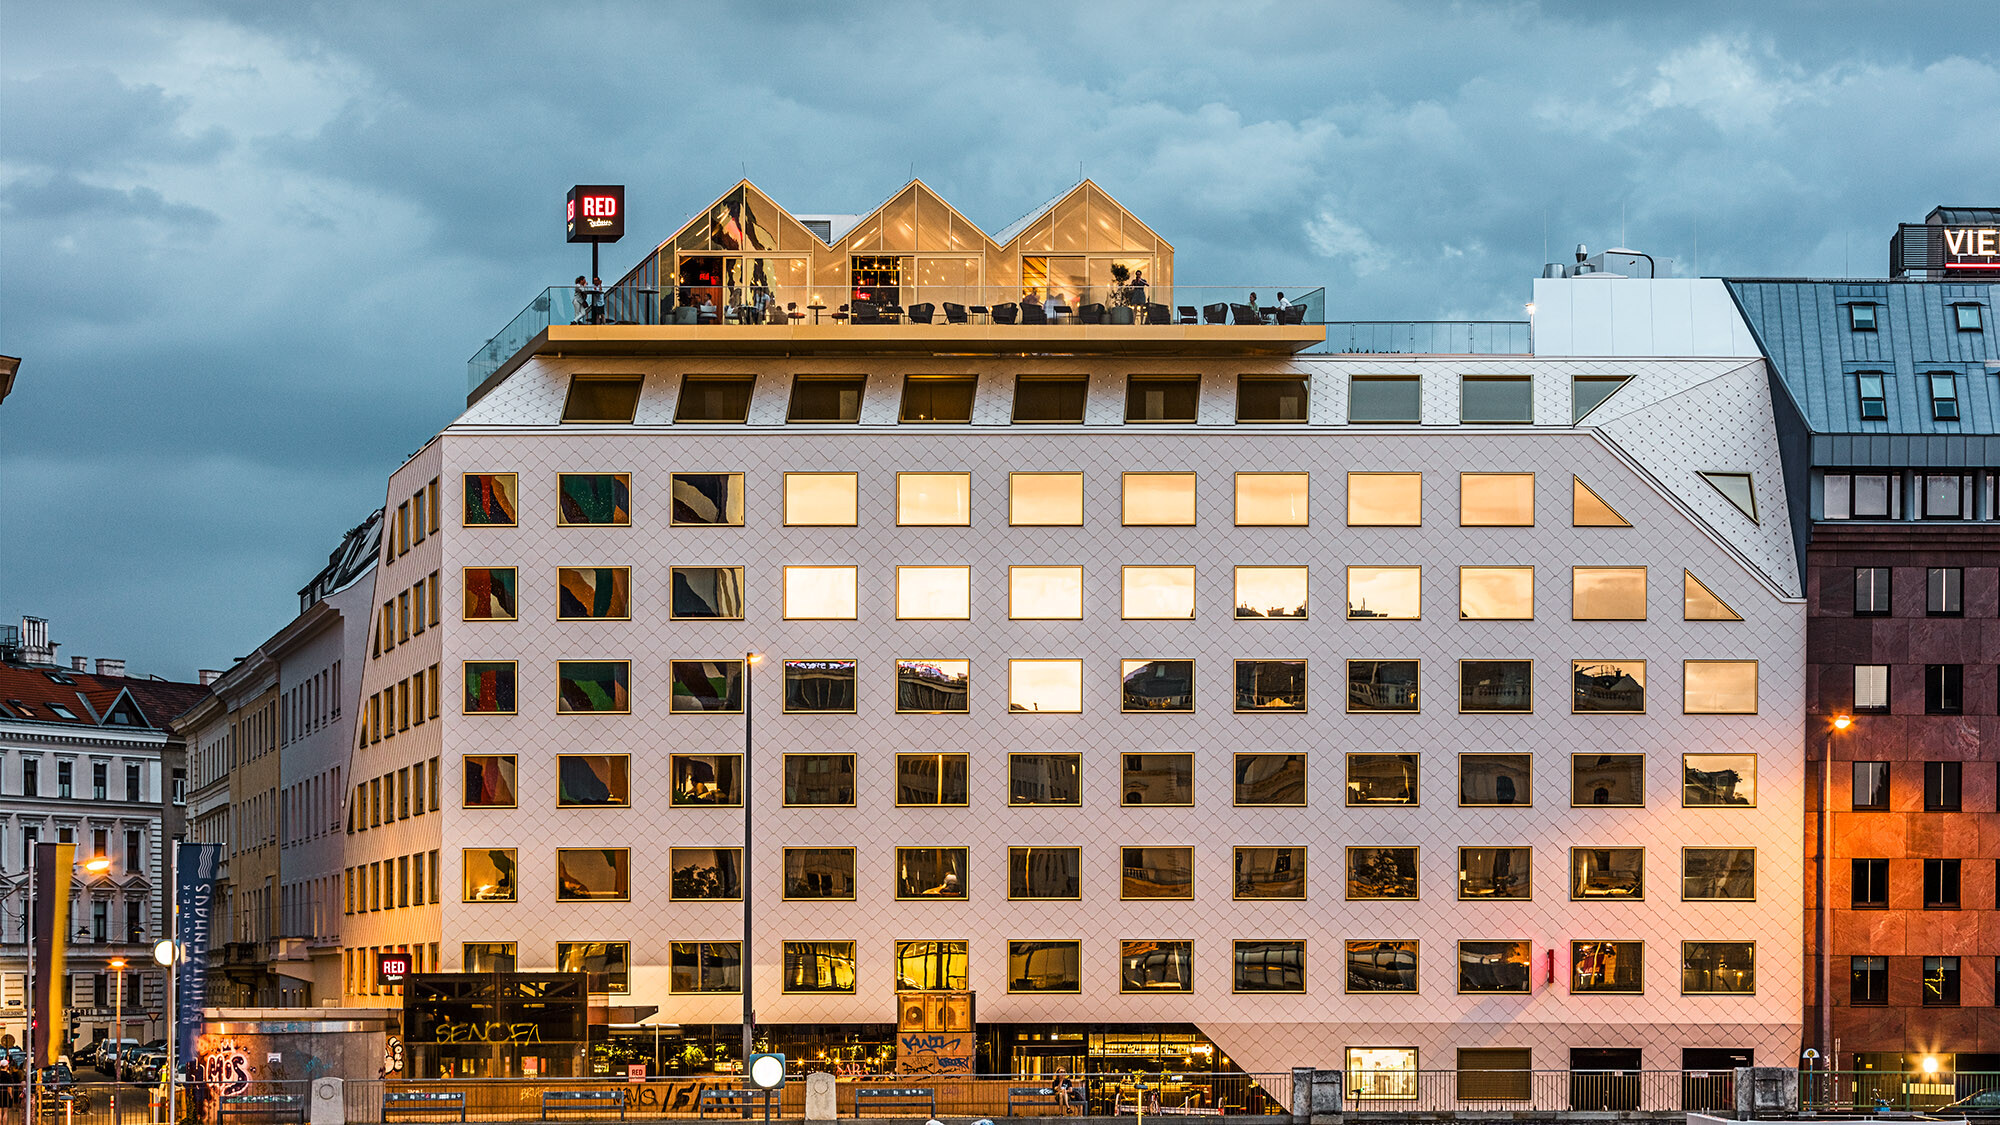 Une photo prise le soir de l'hôtel THE ROCK Radisson RED Vienna et de ses environs animés, les bâtiments d'en face se reflétant dans ses fenêtres.